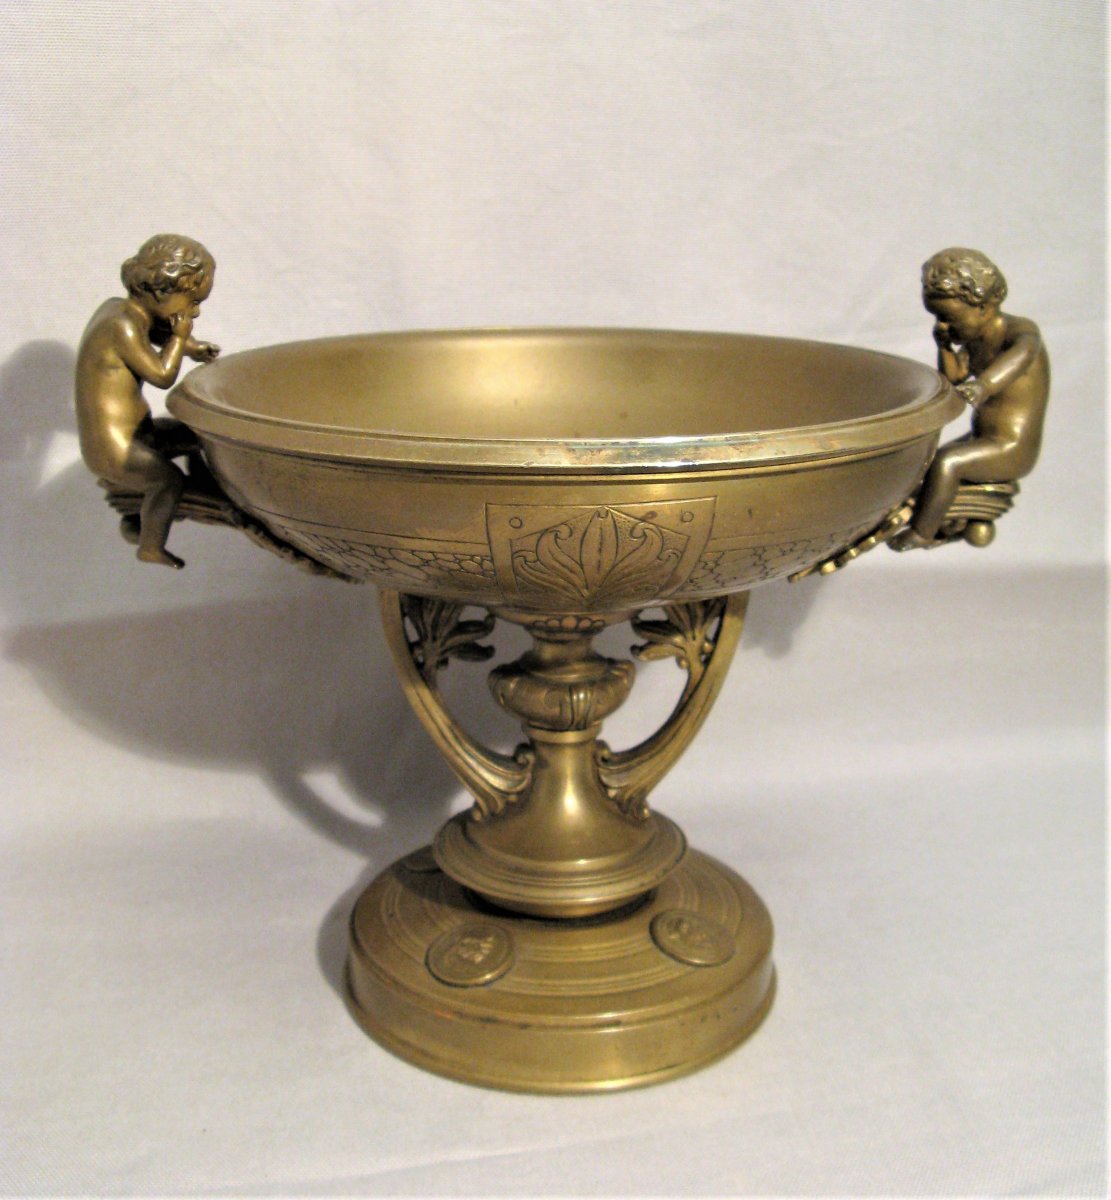 Coupe en bronze aux amours époque fin XIX ème siècle